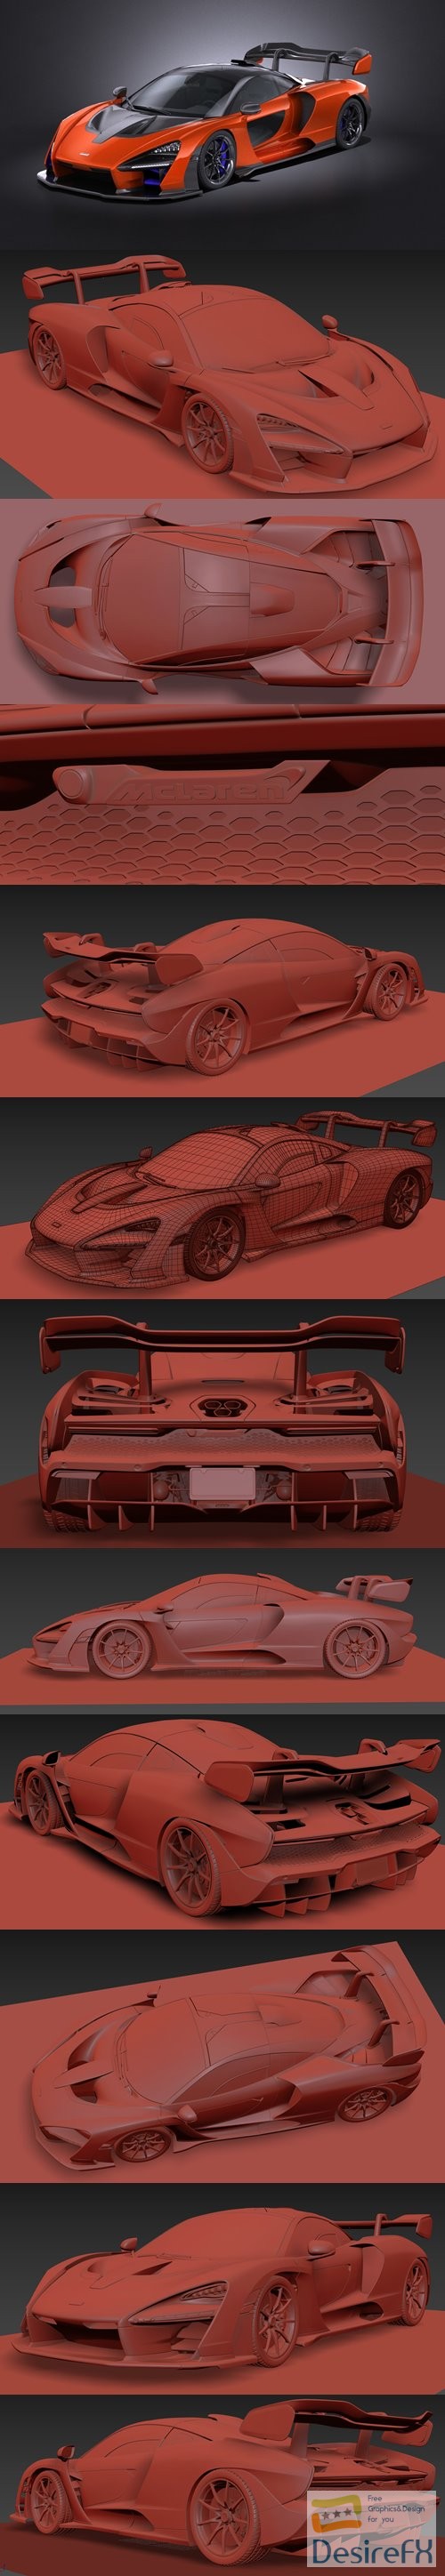 McLaren Senna 3D Model